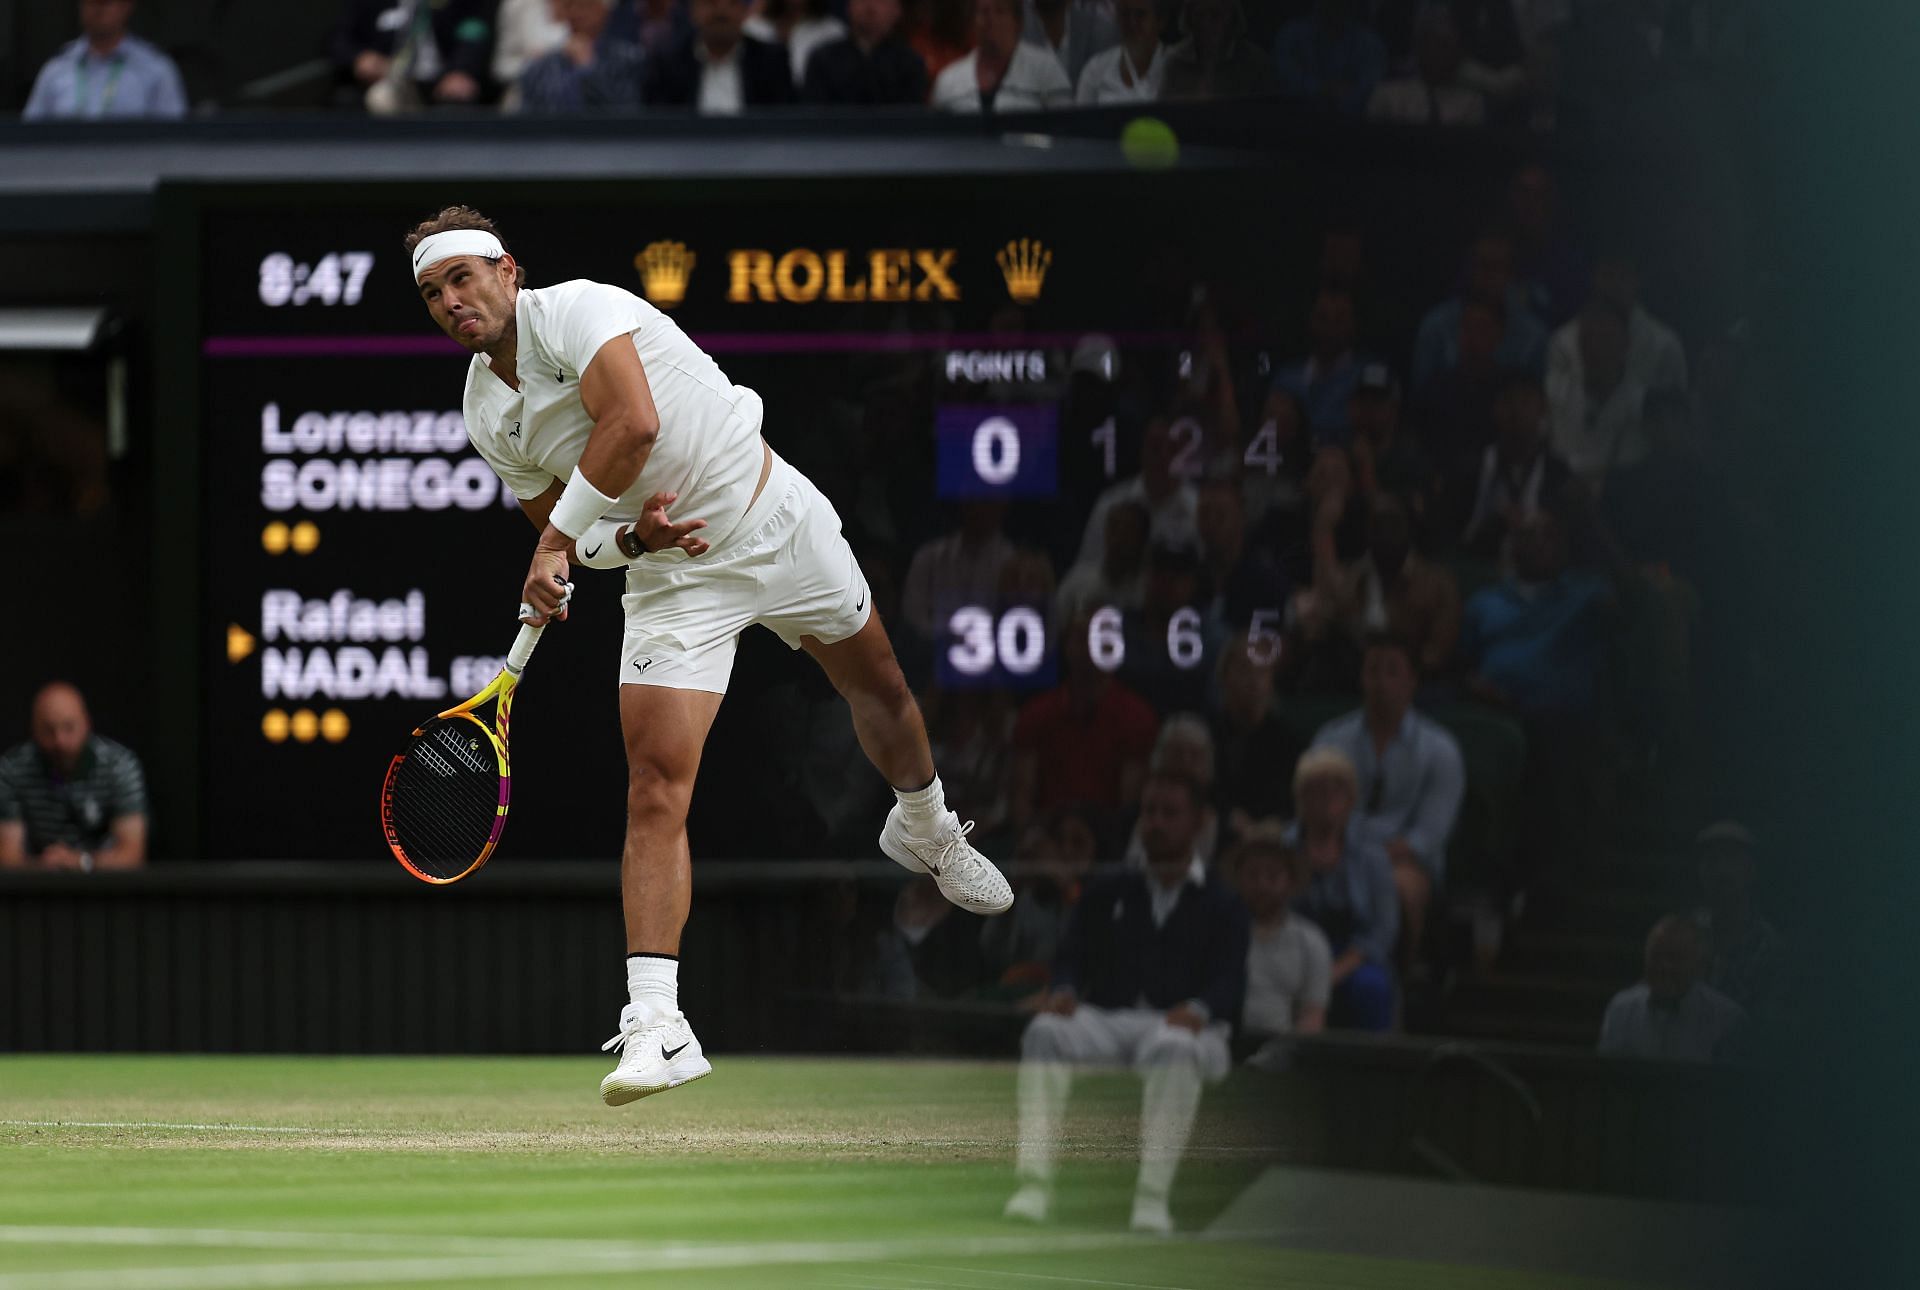 Day Six: The Championships - Wimbledon 2022